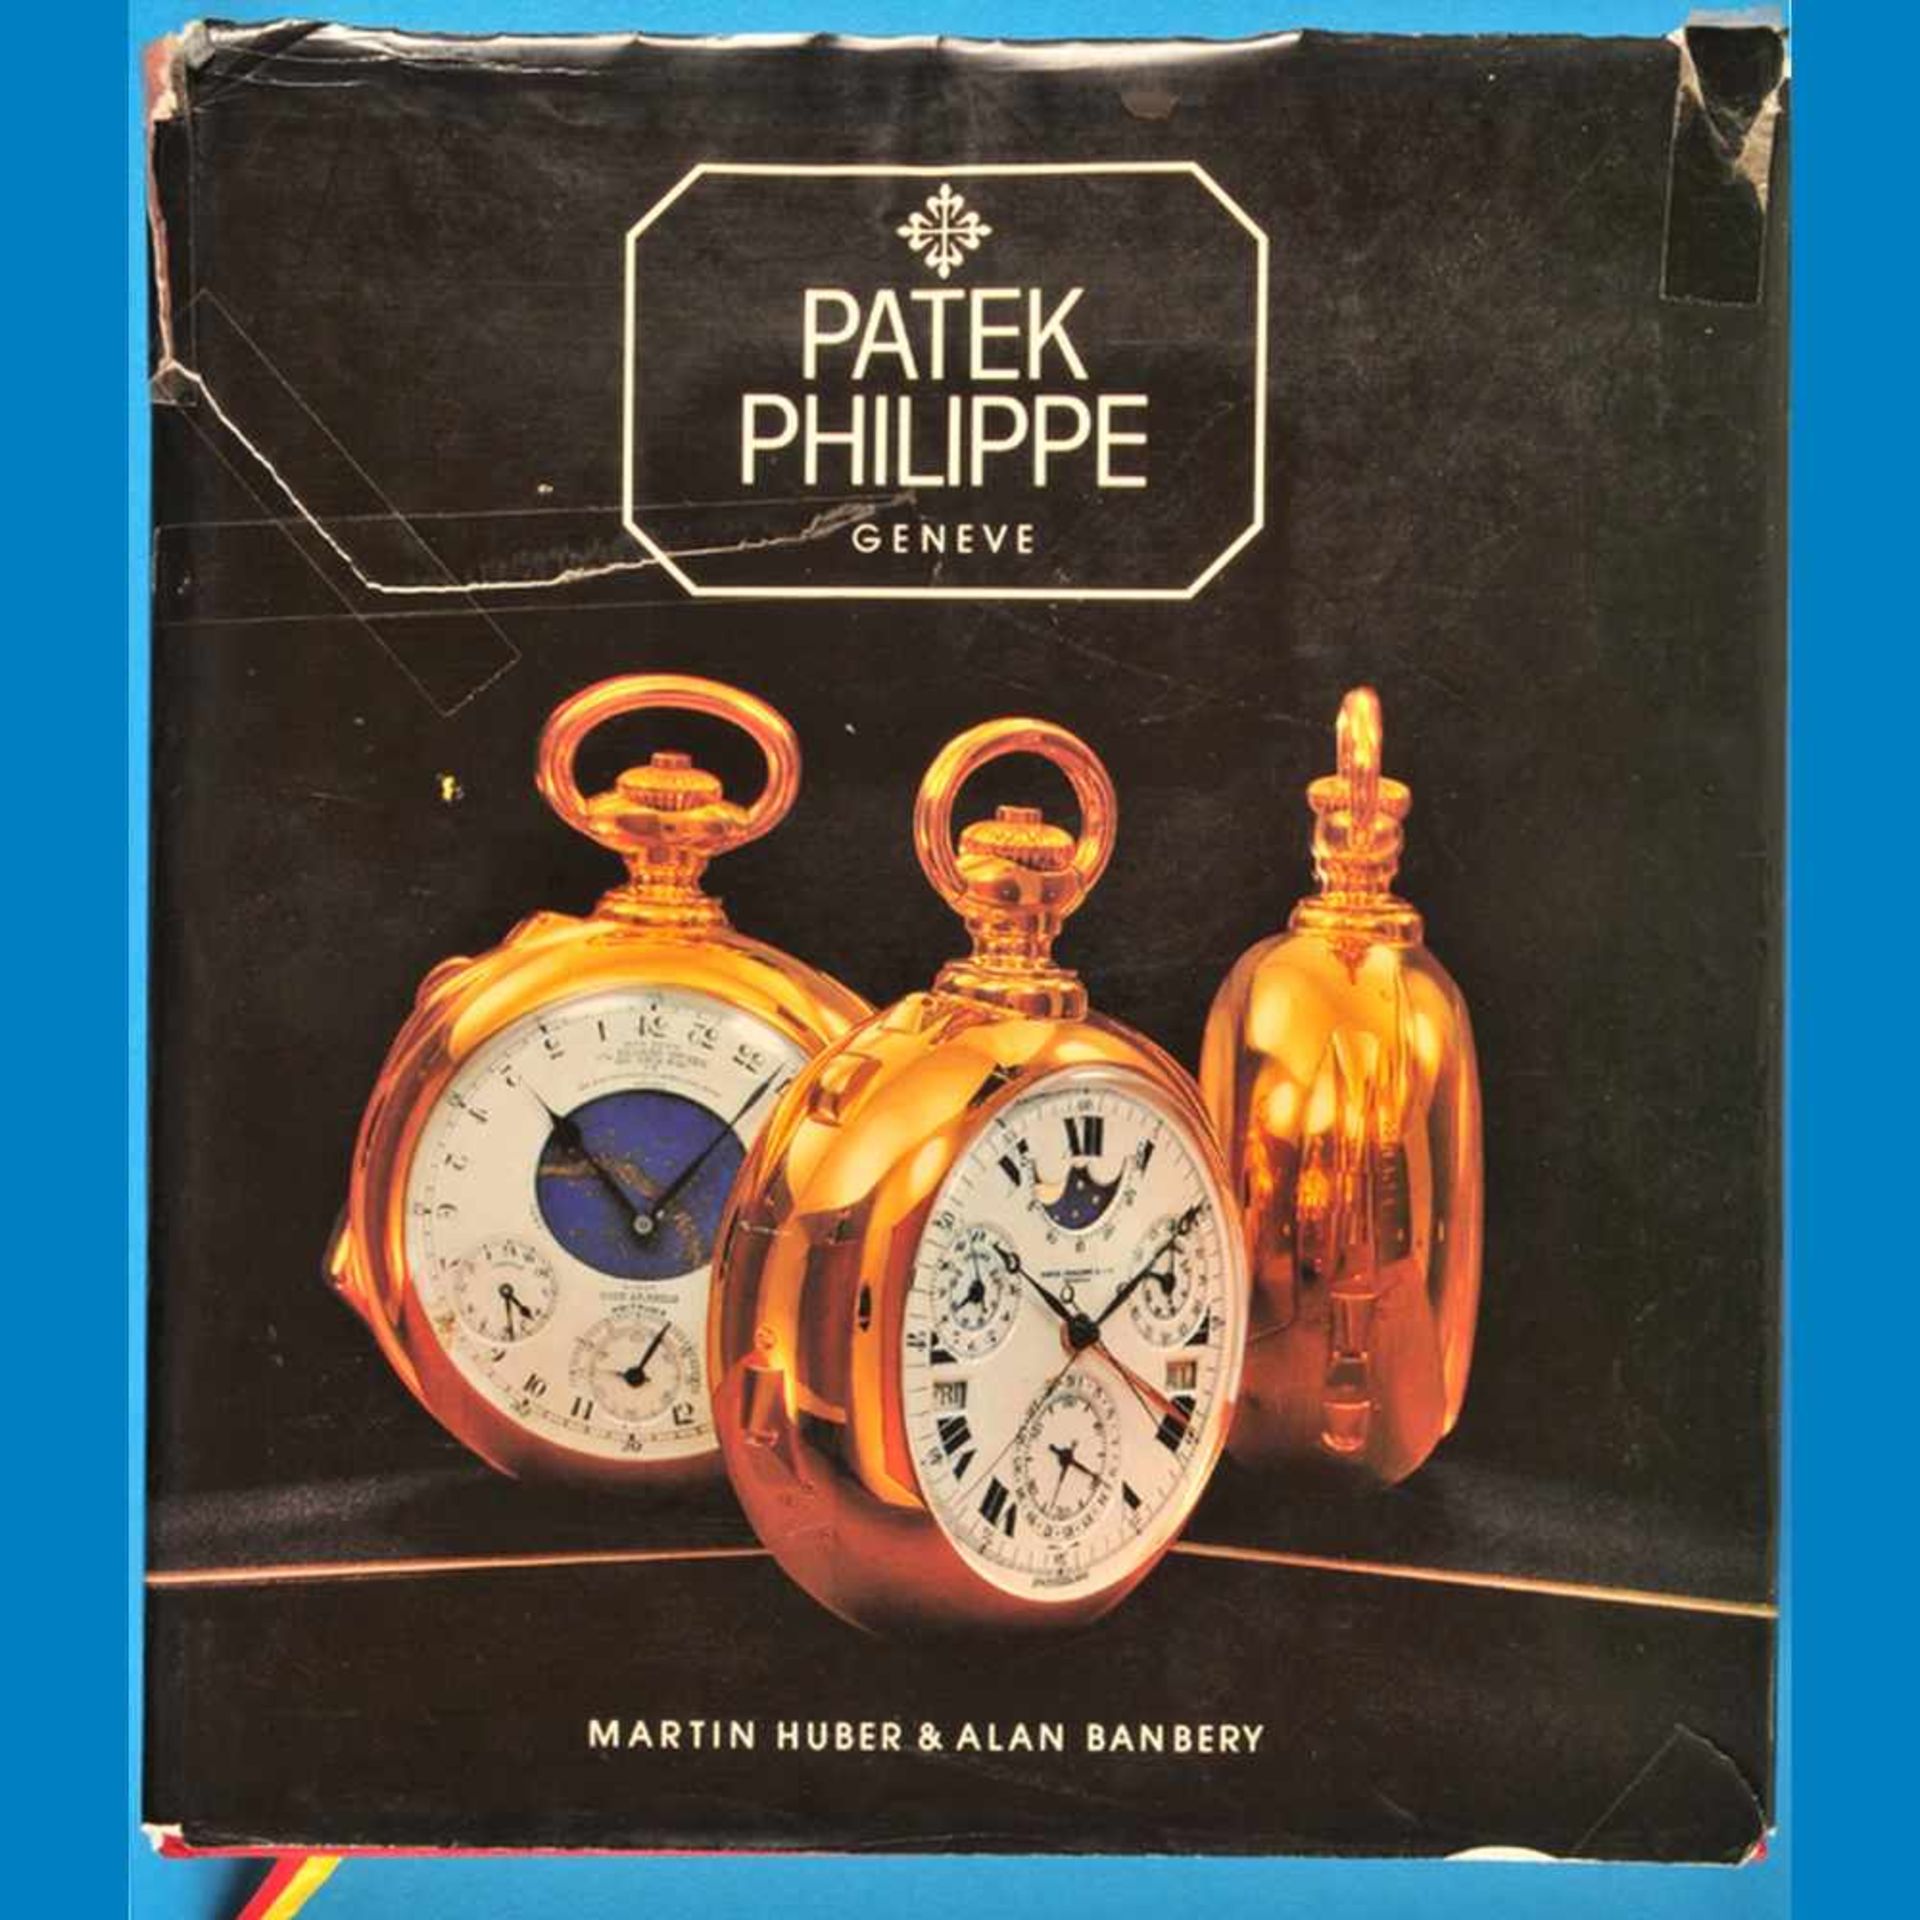 Martin Huber/A. Banbery, Patek Philippe, Geneve – Taschenuhren, 1982, Auflage 3000 Stck.Mar